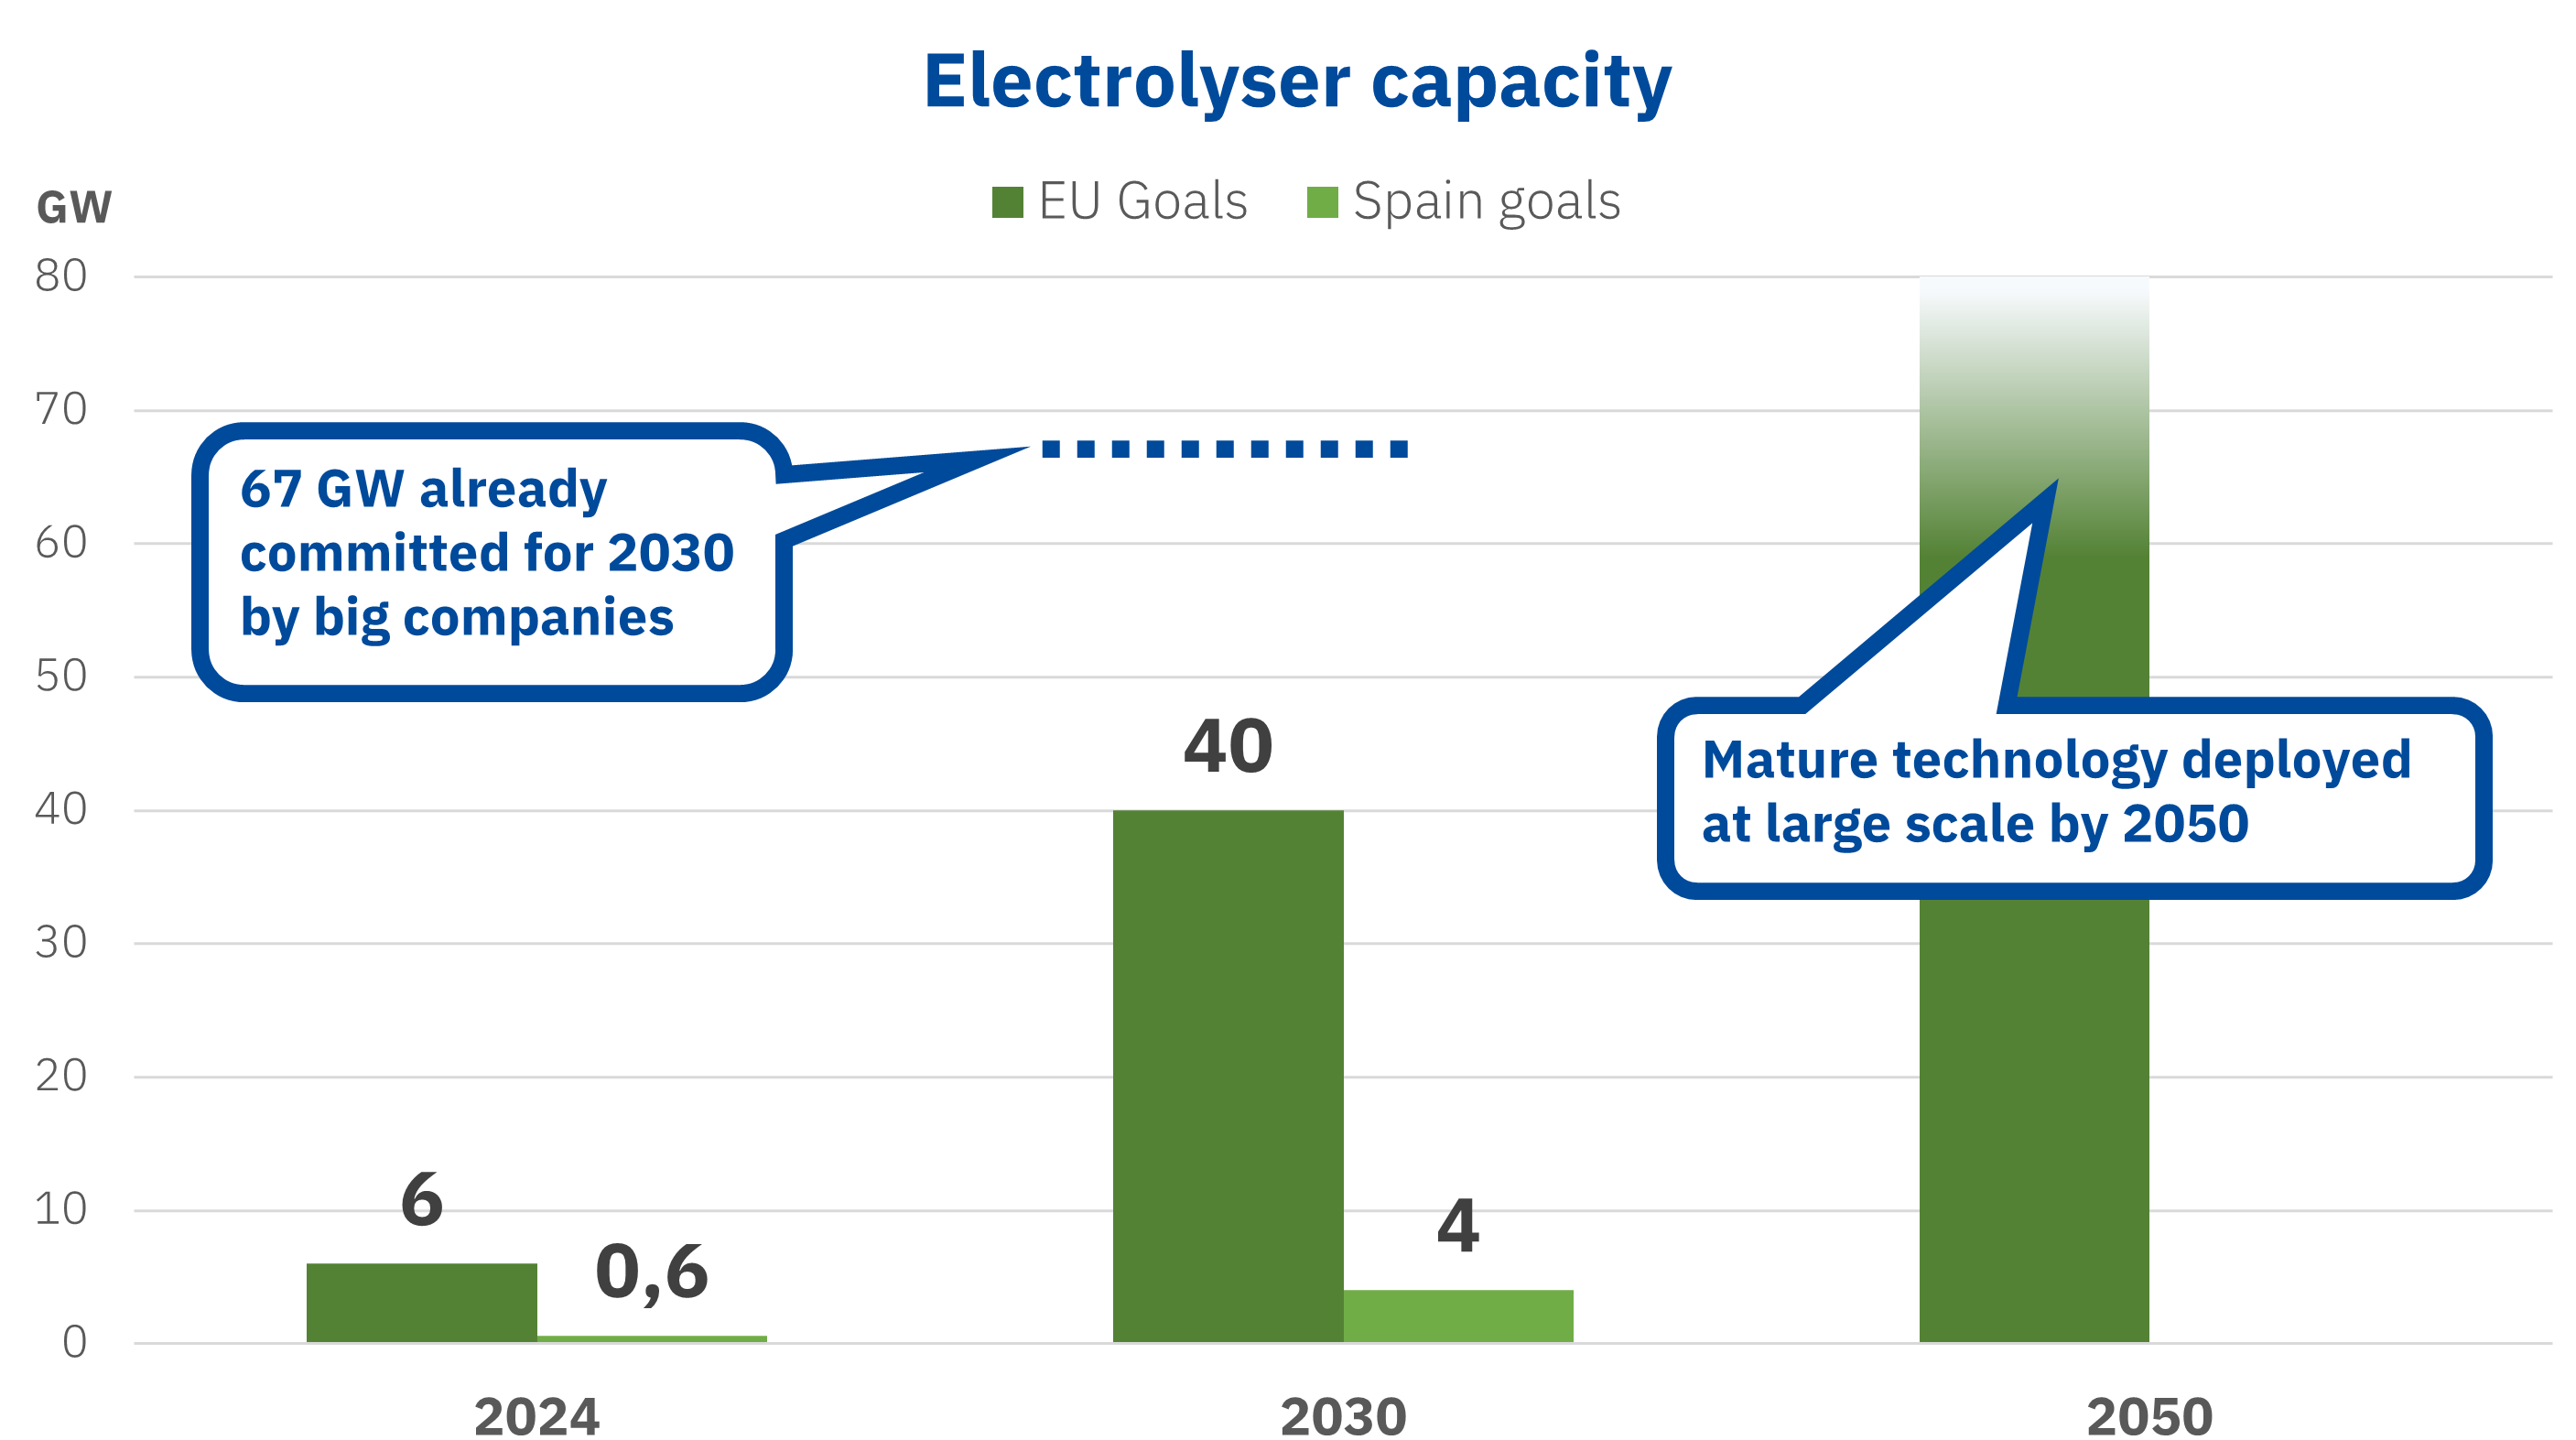 AleaSoft - Electrolyser capacity green hydrogen